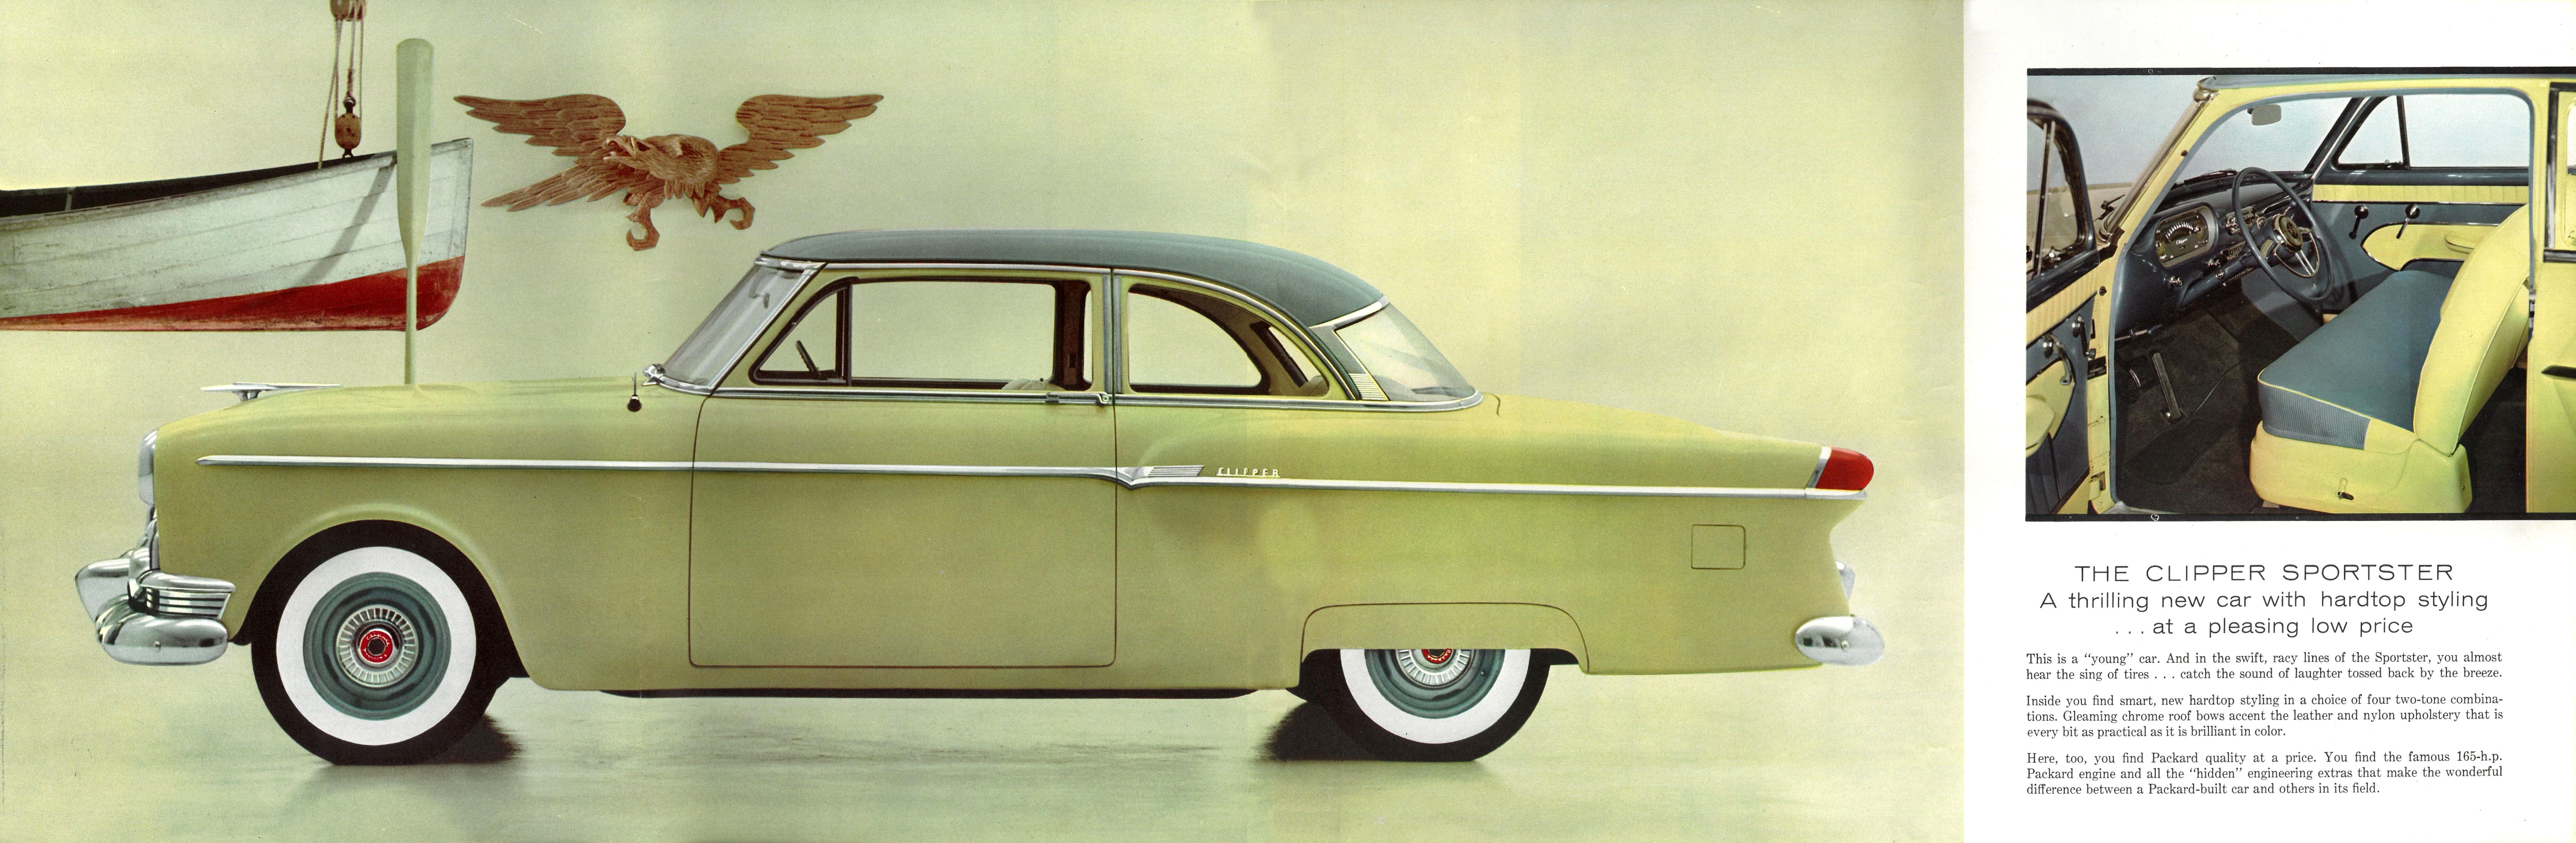 1954 Packard Clipper-08-09